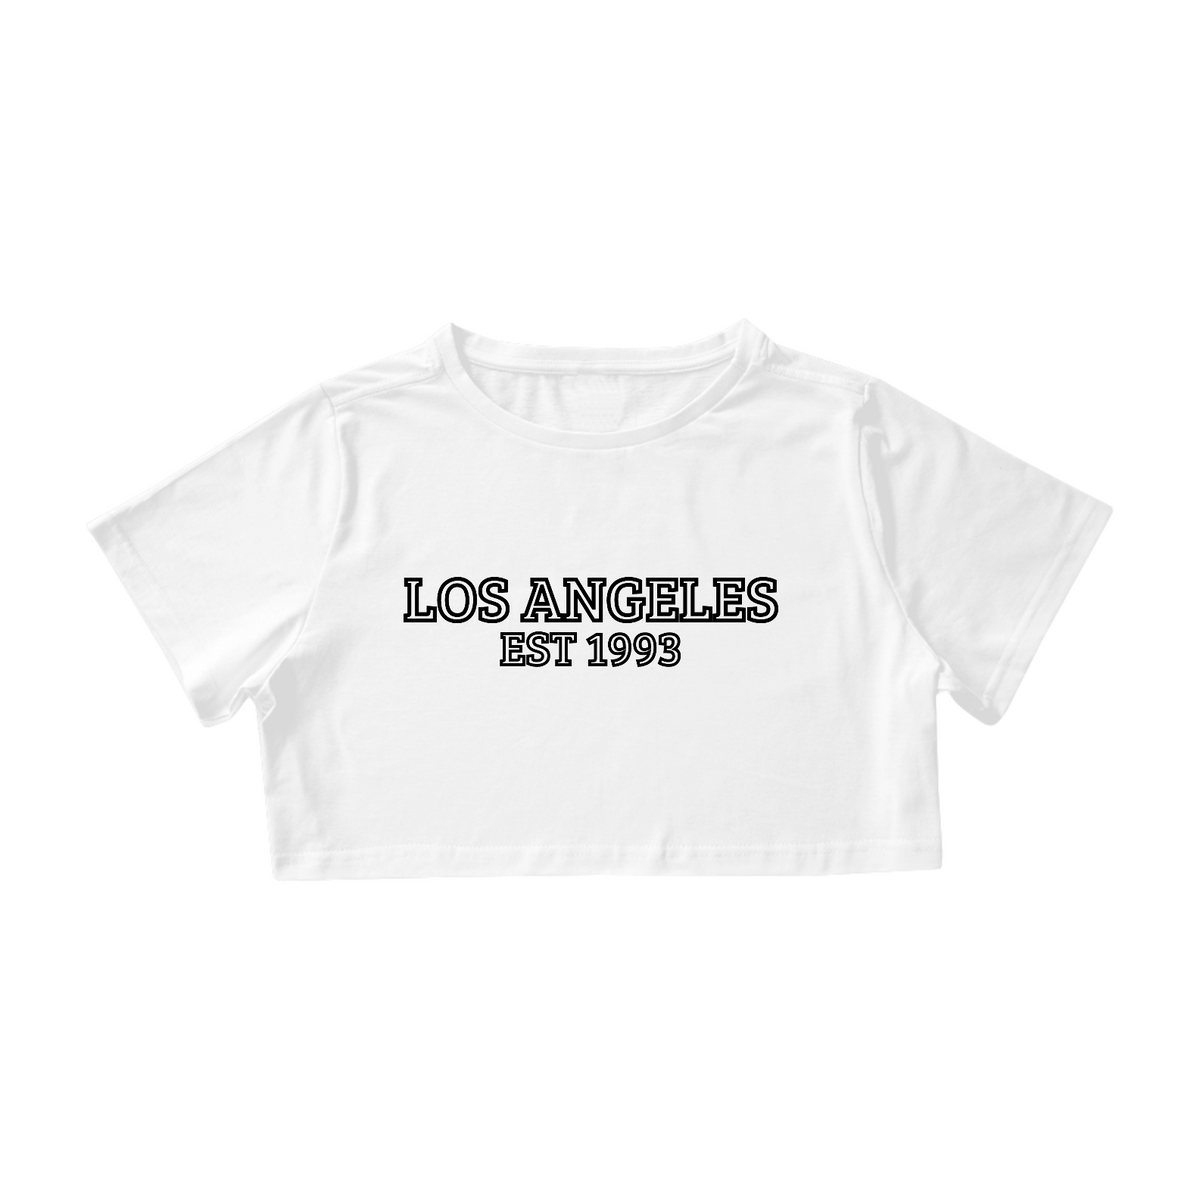 Nome do produto: Los Angeles 